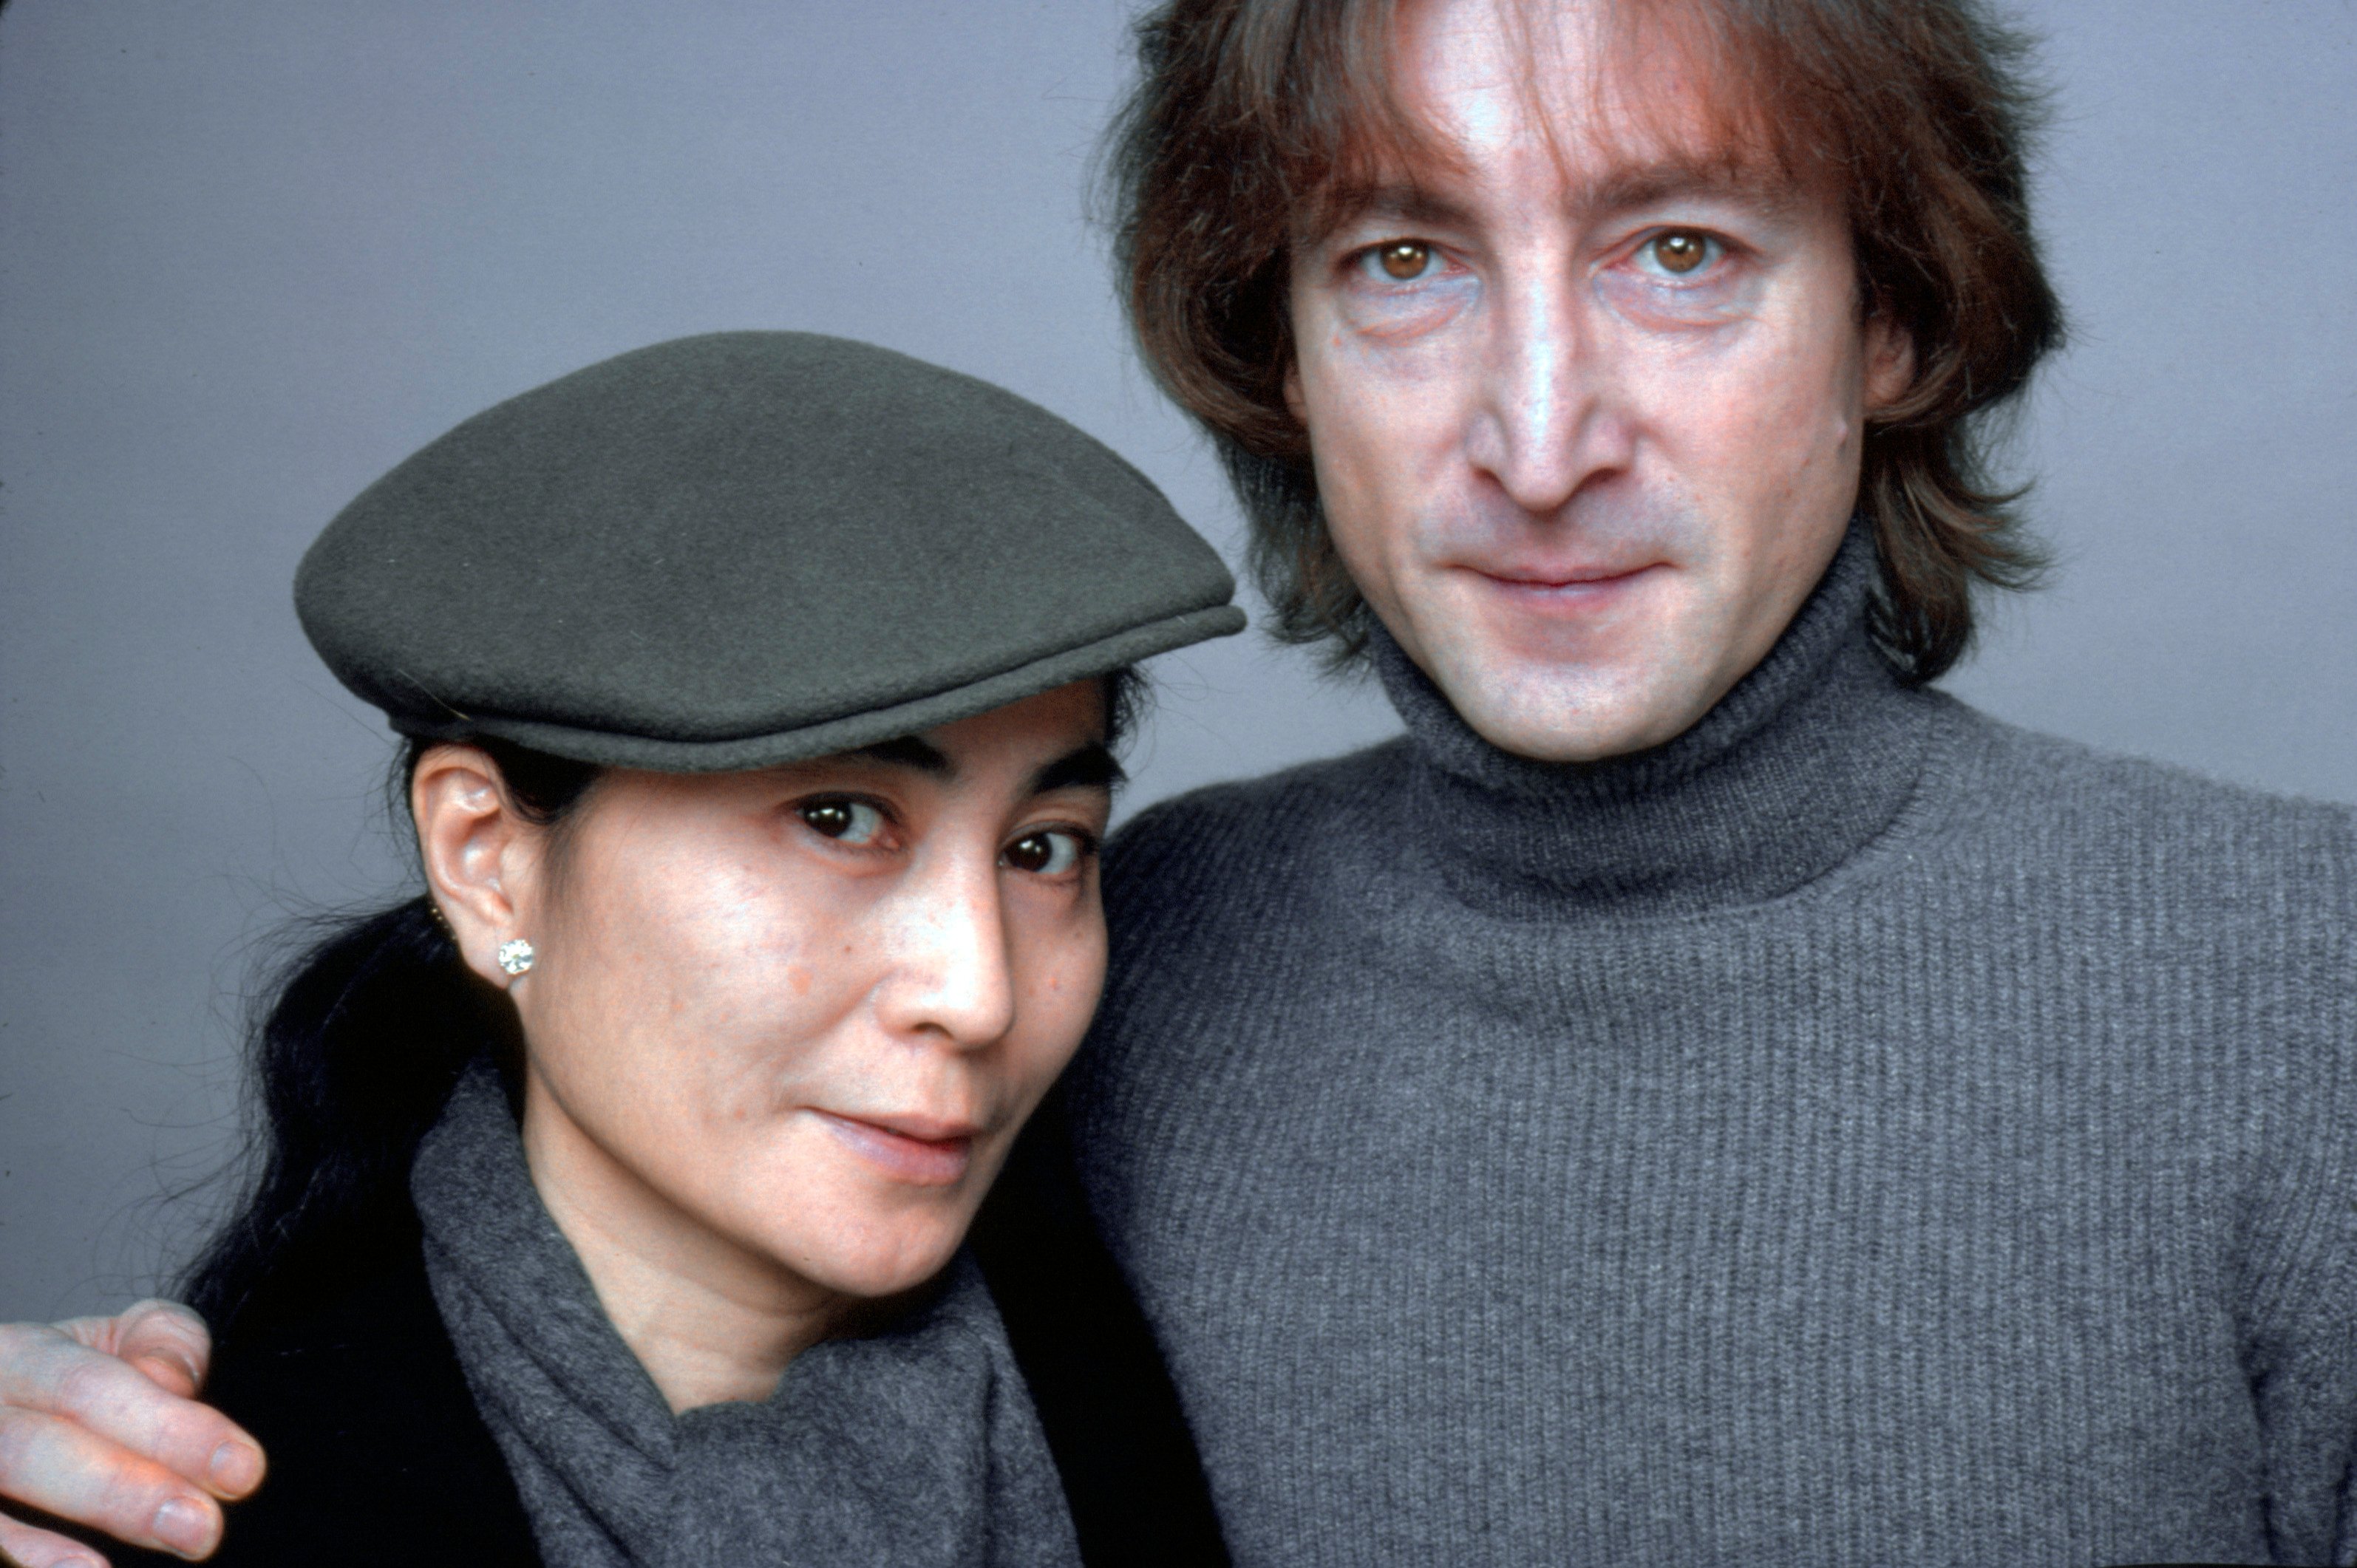 The Beatles' John Lennon and artist Yoko Ono photographed